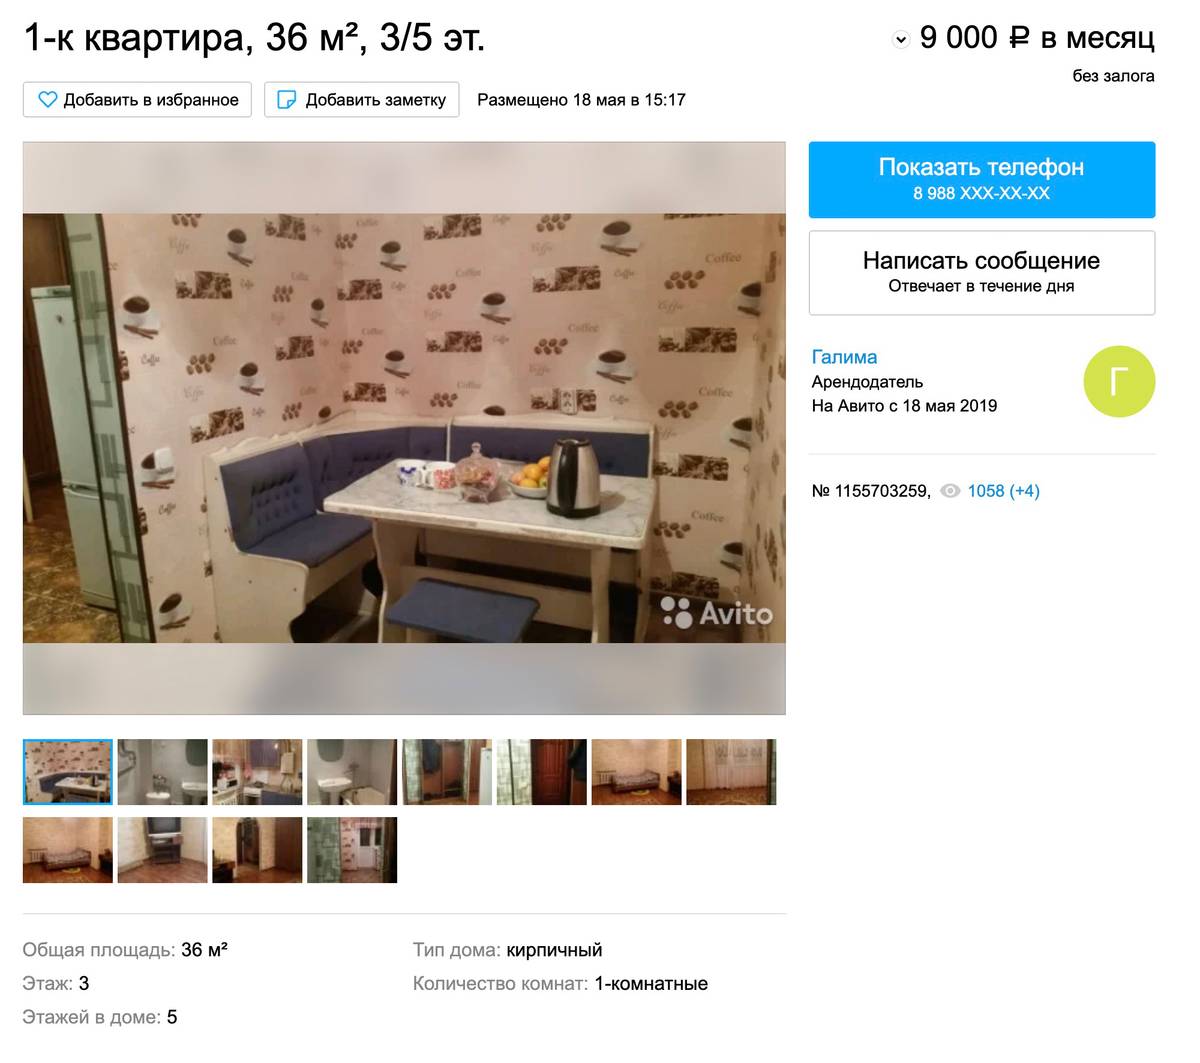 Аренда однокомнатной квартиры в центре города стоит 9000 <span class=ruble>Р</span> в месяц